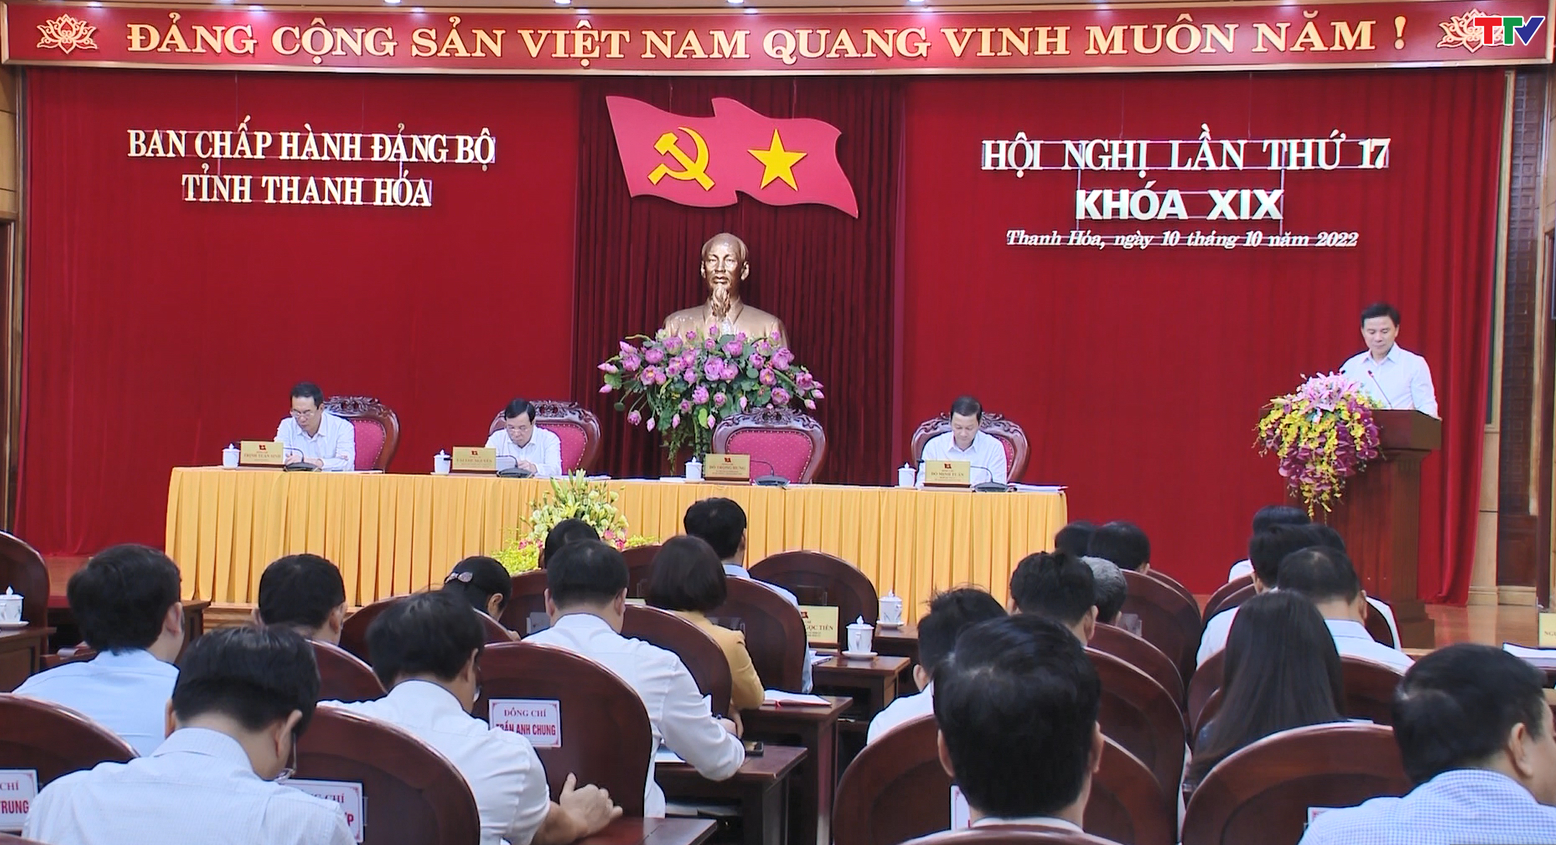 Hội nghị lần thứ 17 Ban Chấp hành Đảng bộ tỉnh Thanh Hóa khóa XIX - Ảnh 3.